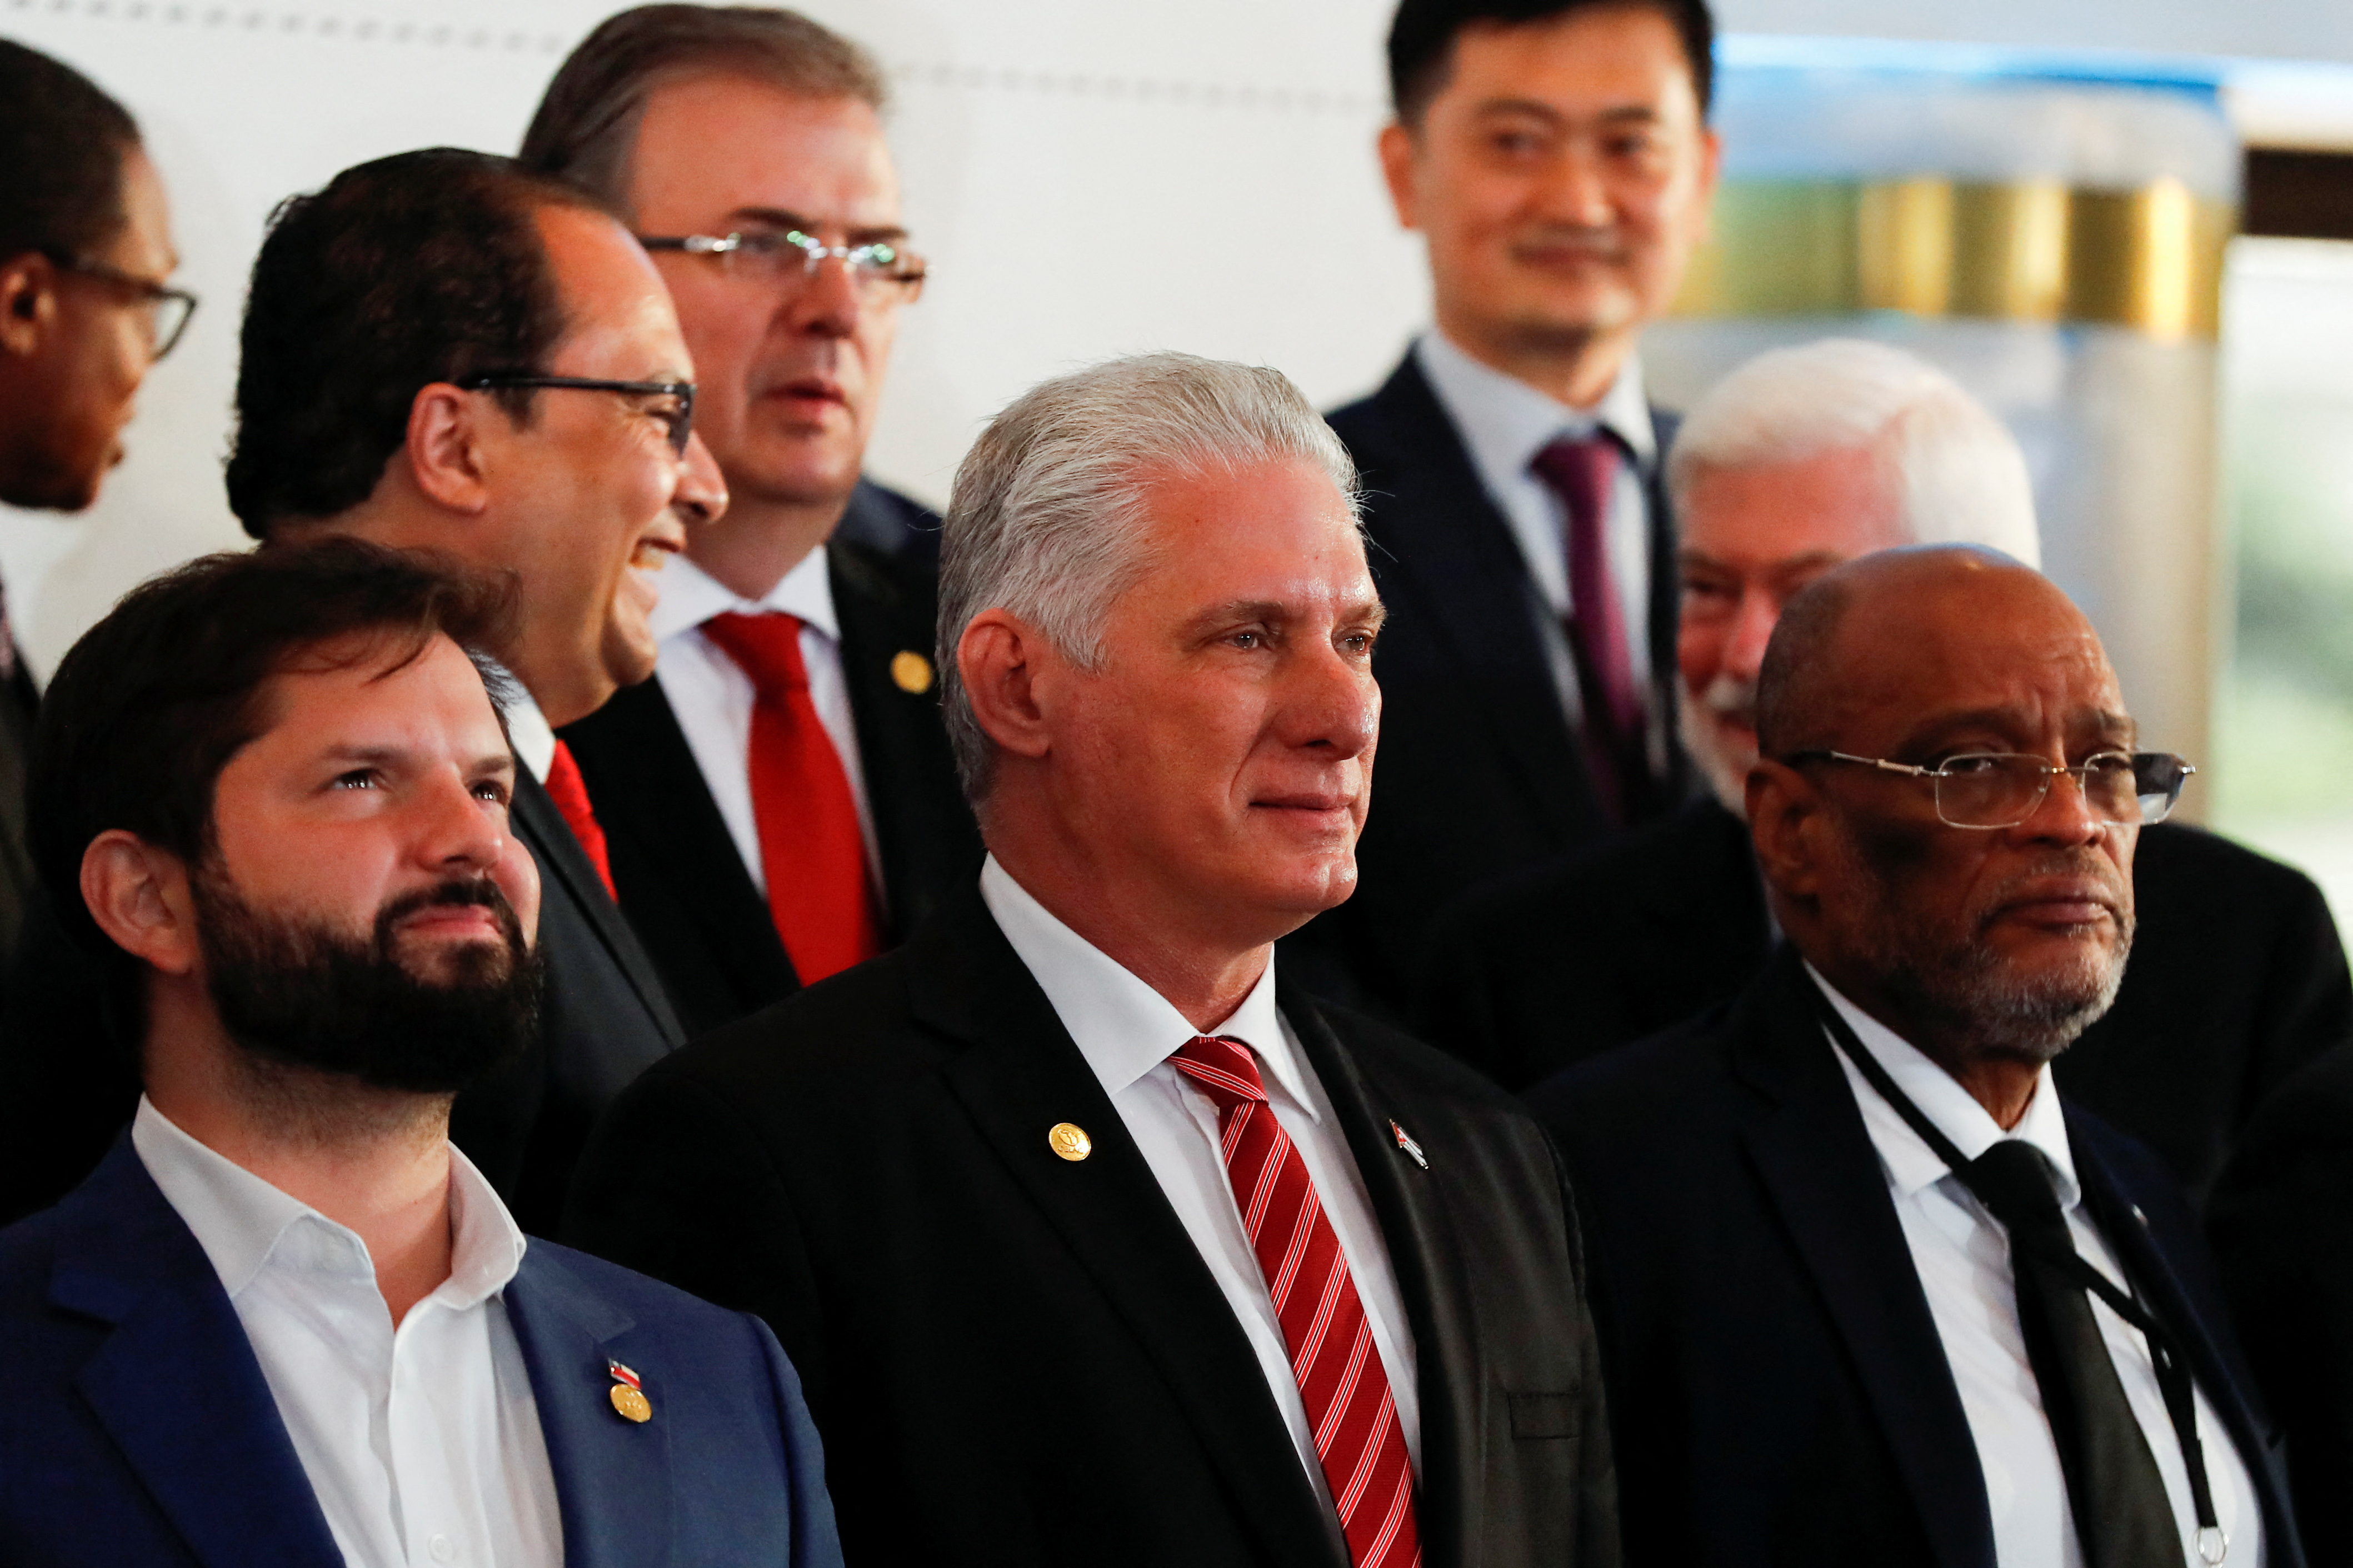 El dictador cubano MIguel Díaz-Canel, en el centro de la imagen, participó de la cumbre de la CELAC en Buenos Aires. Allí recibió elogios del presidente argentino Alberto Fernández (Reuters)